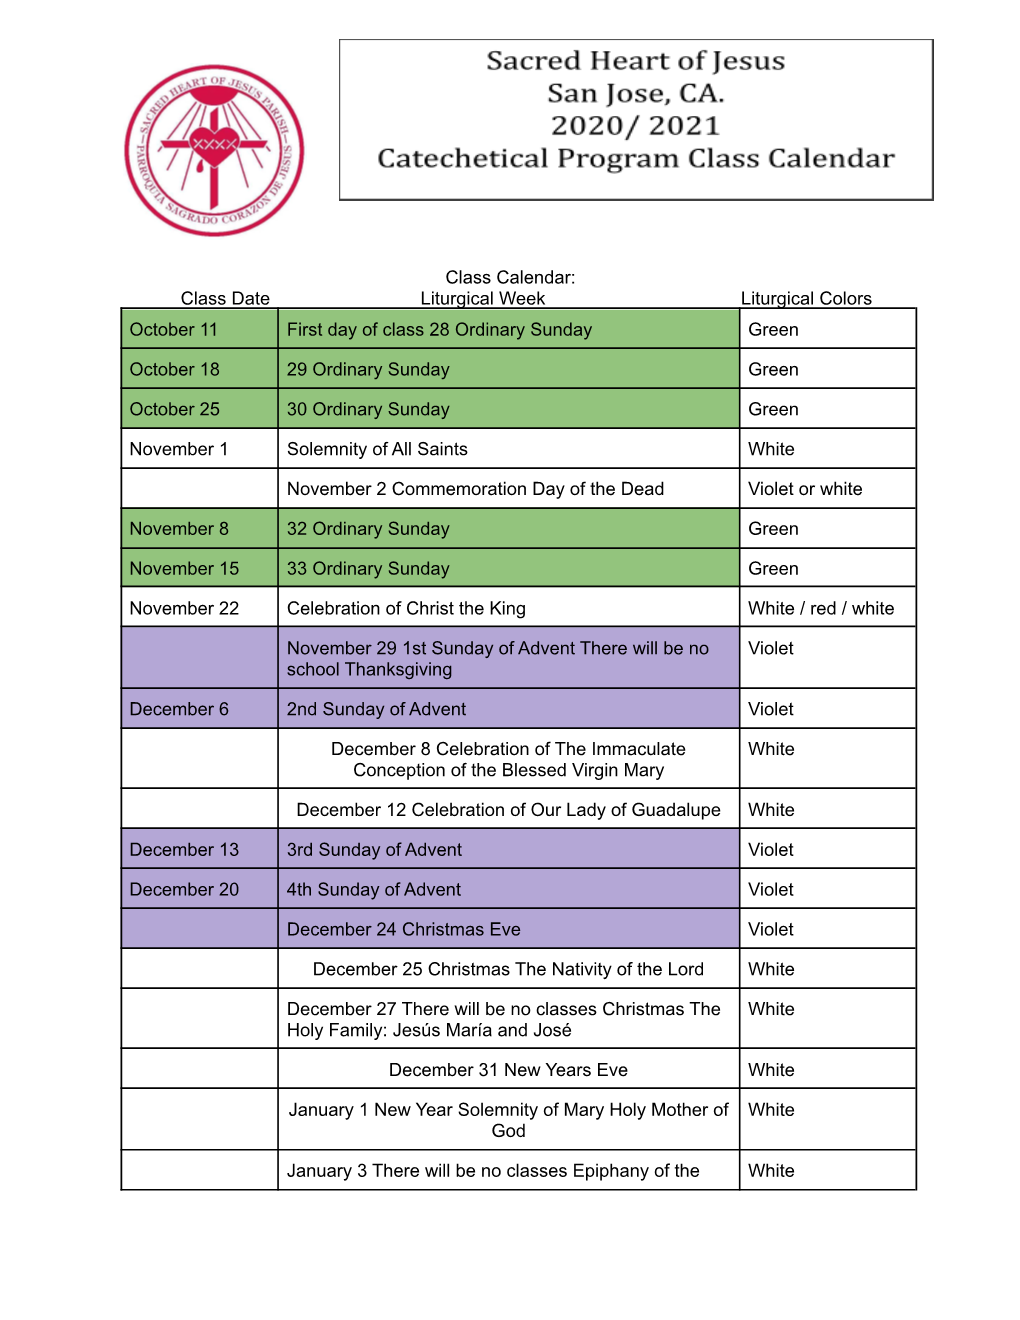 Class Calendar: Class Date Liturgical Week Liturgical Colors October 11 First Day of Class 28 Ordinary Sunday Green